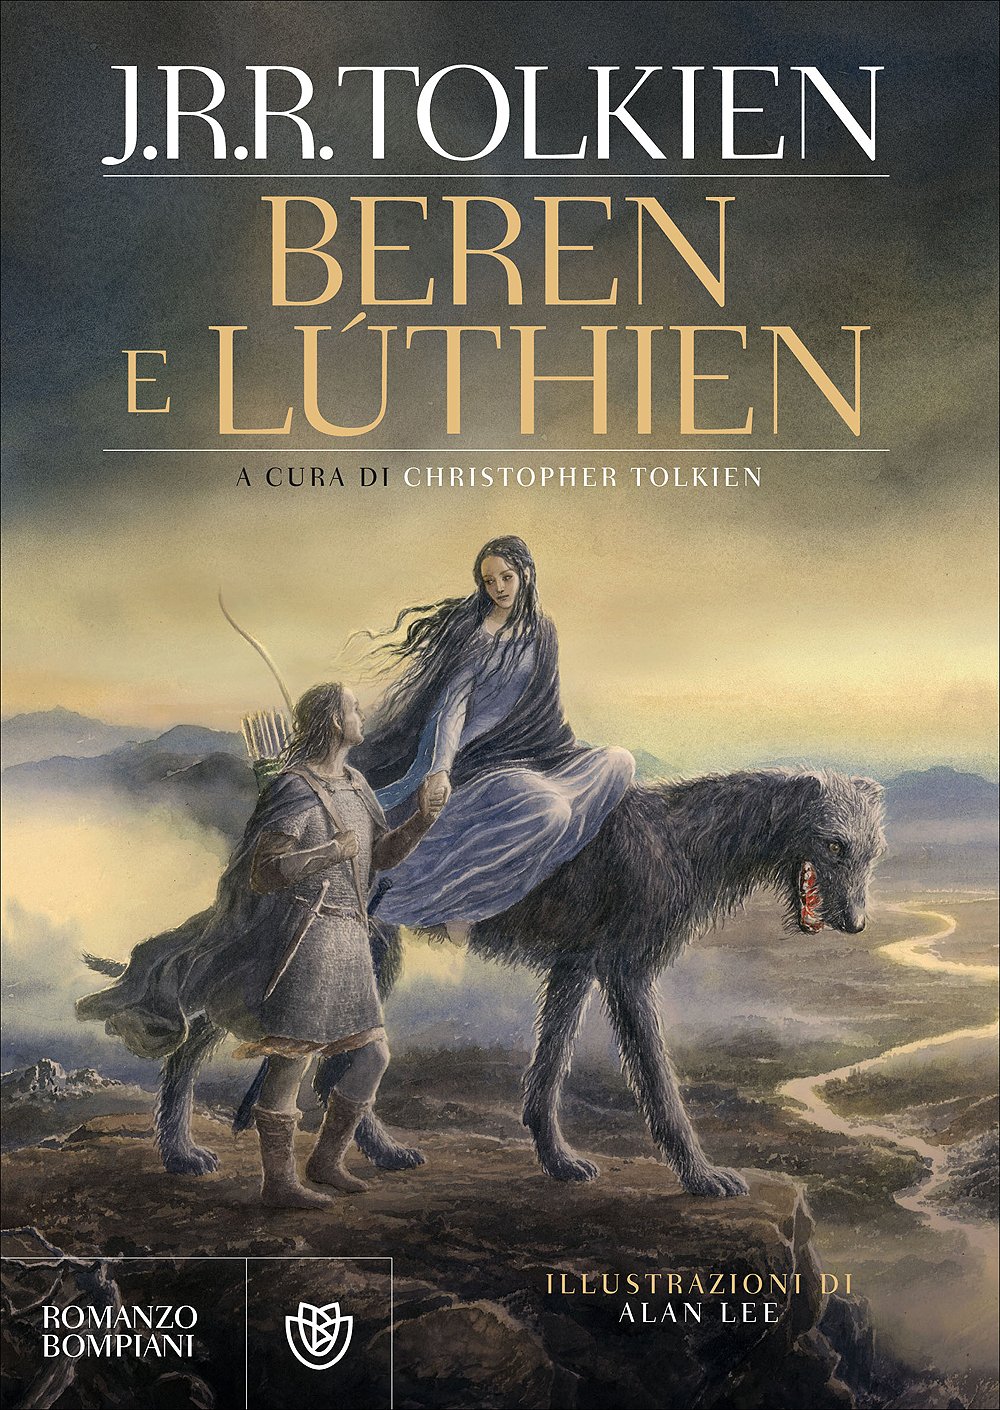 Beren e Lùthien, cent’anni d’amore